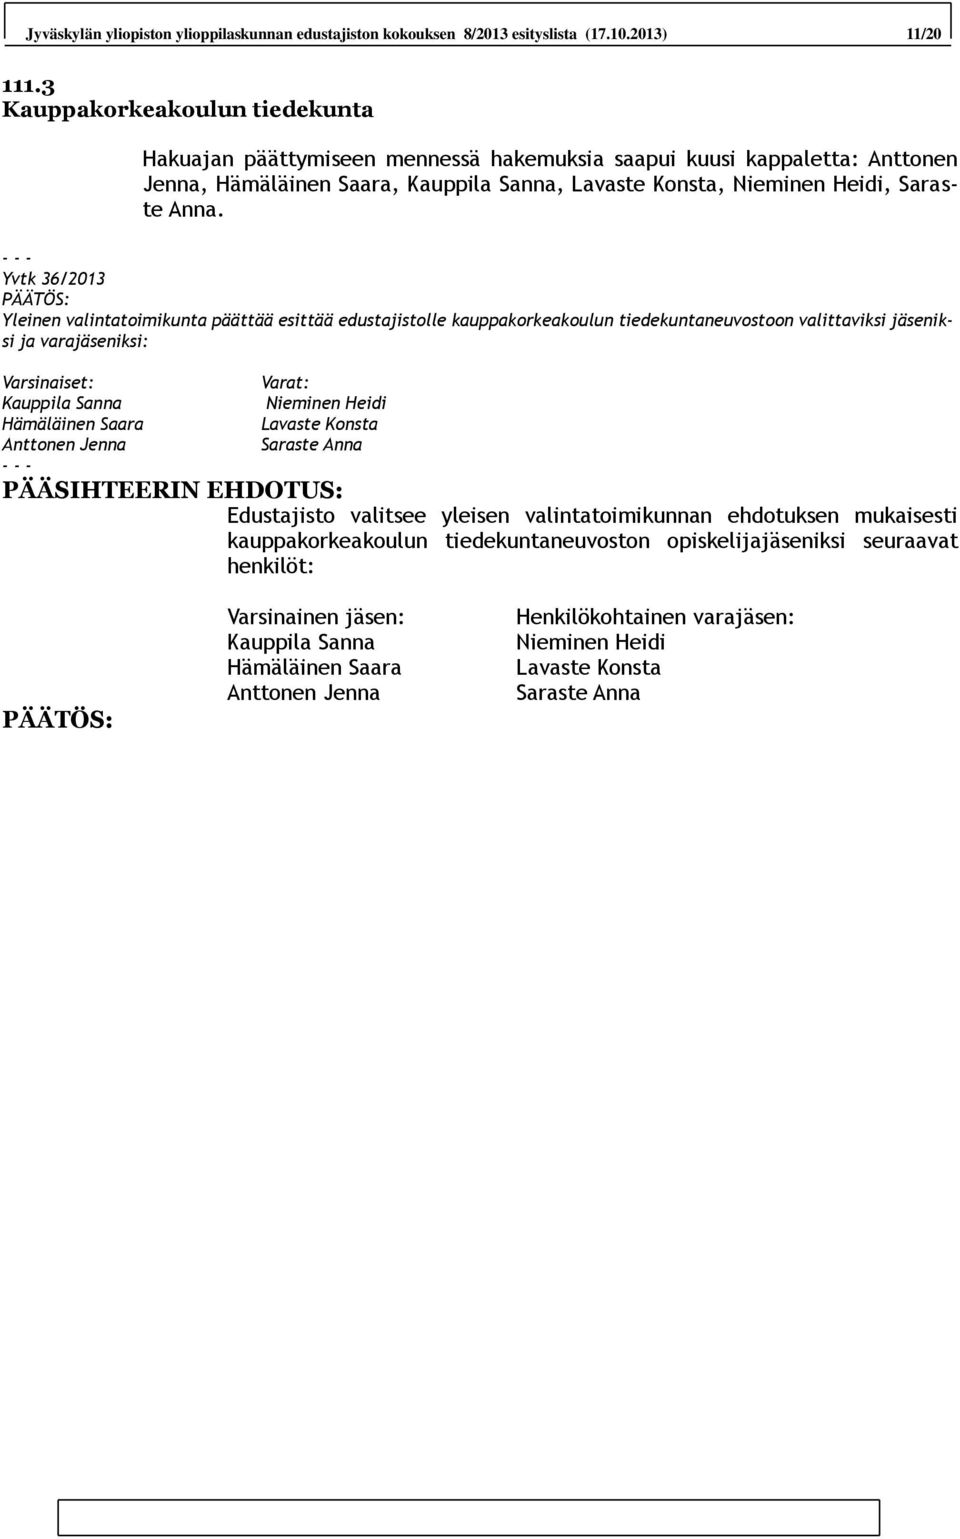 Yvtk 36/2013 Yleinen valintatoimikunta päättää esittää edustajistolle kauppakorkeakoulun tiedekuntaneuvostoon valittaviksi jäseniksi ja varajäseniksi: Varsinaiset: Kauppila Sanna Hämäläinen Saara